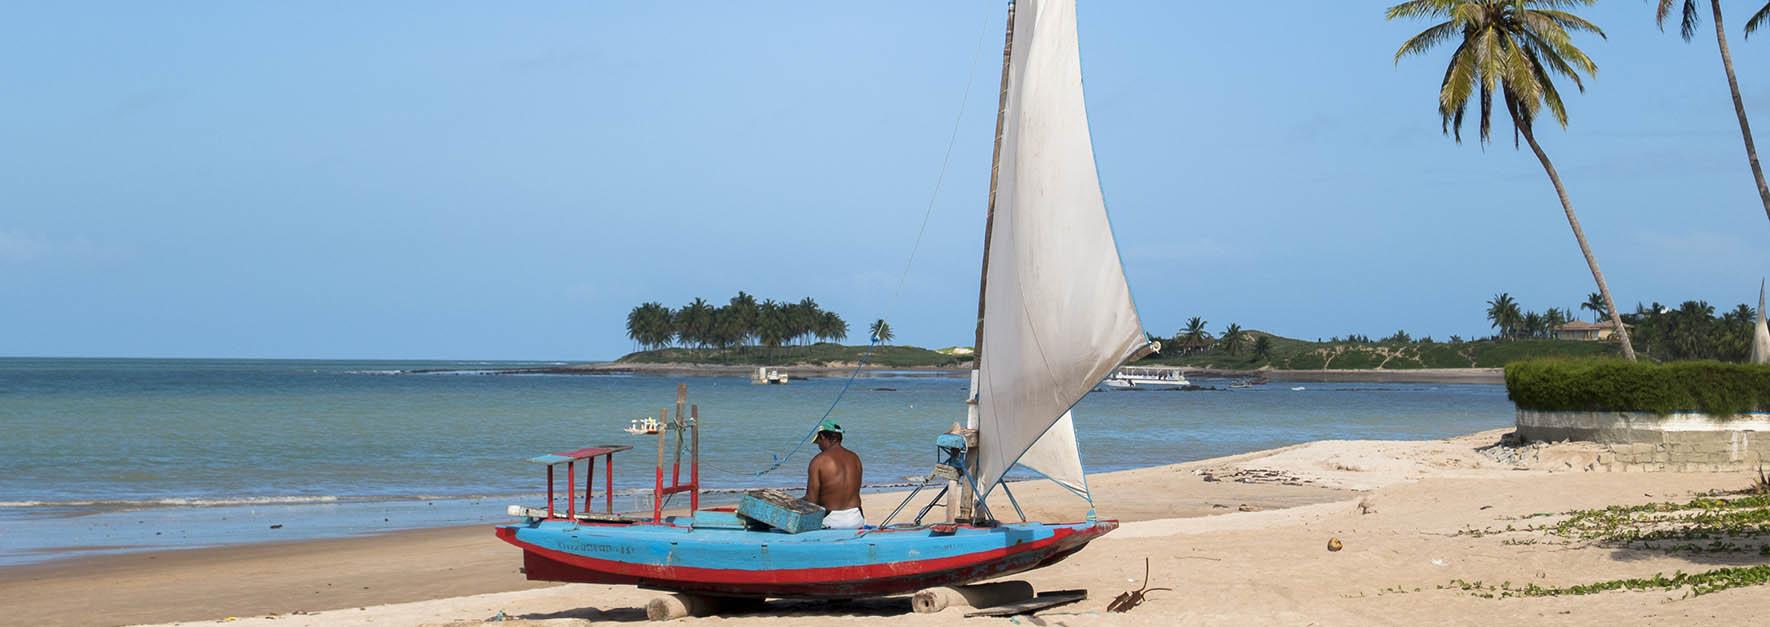 Maracajaú é um paraíso, cercada por dunas, lagoas cristalinas e coqueiros